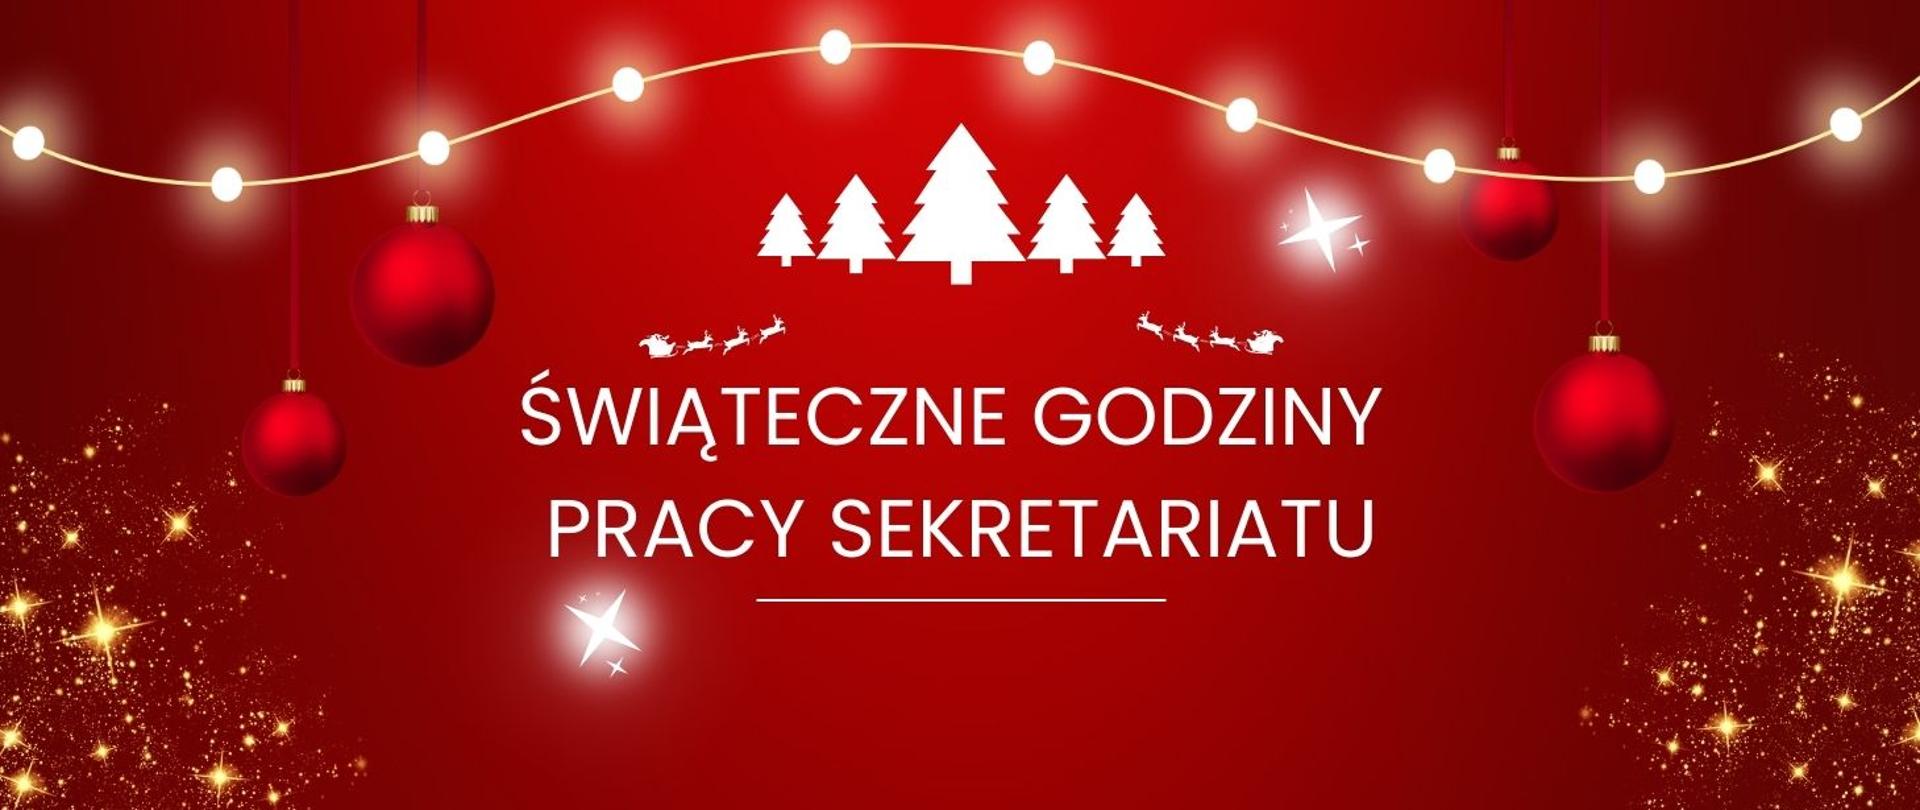 Plakat czerwony z napisem "Świąteczny godziny pracy sekretariatu szkoły", białe litery a czerwonym tle, wokół symbole bożonarodzeniowe - gwiazdy, bombki, białe śnieżynki.